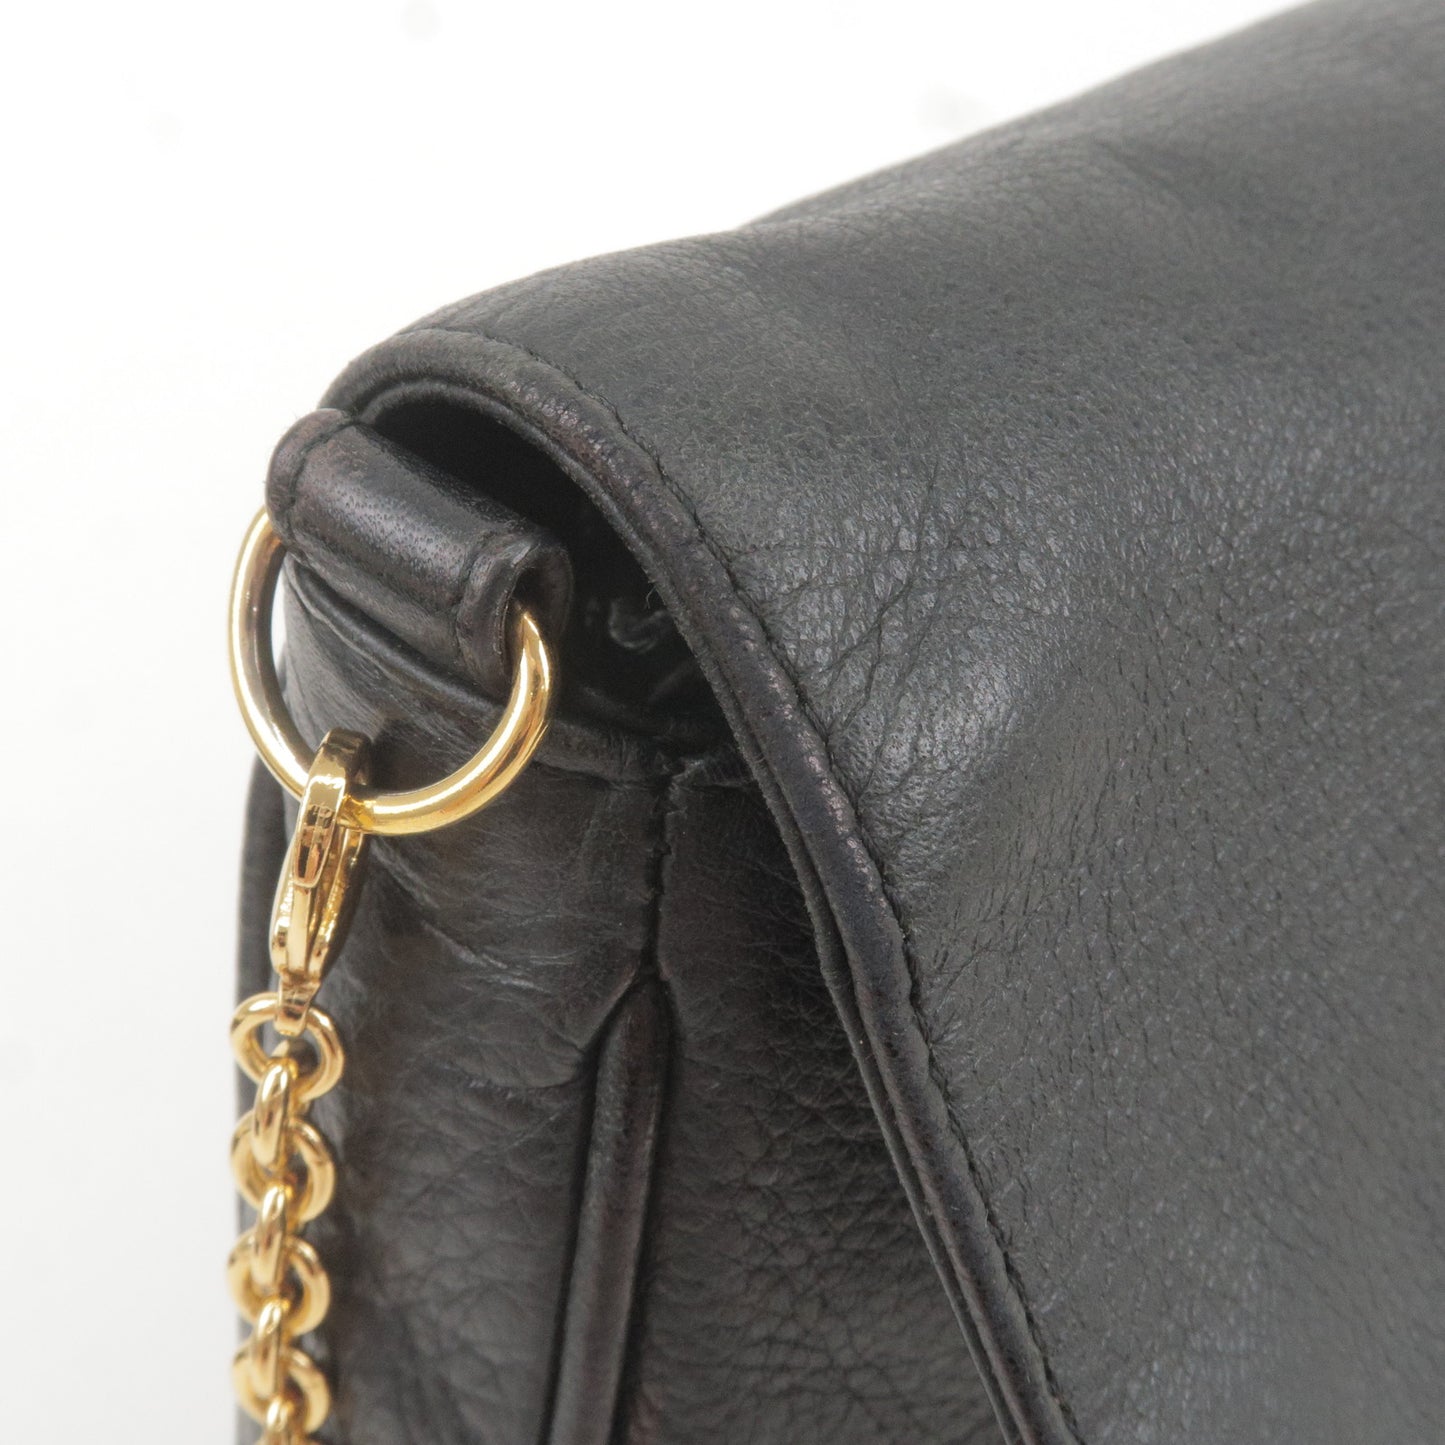 FENDI Leather Chain Shoulder Bag Purse Pouch Black 8M0276